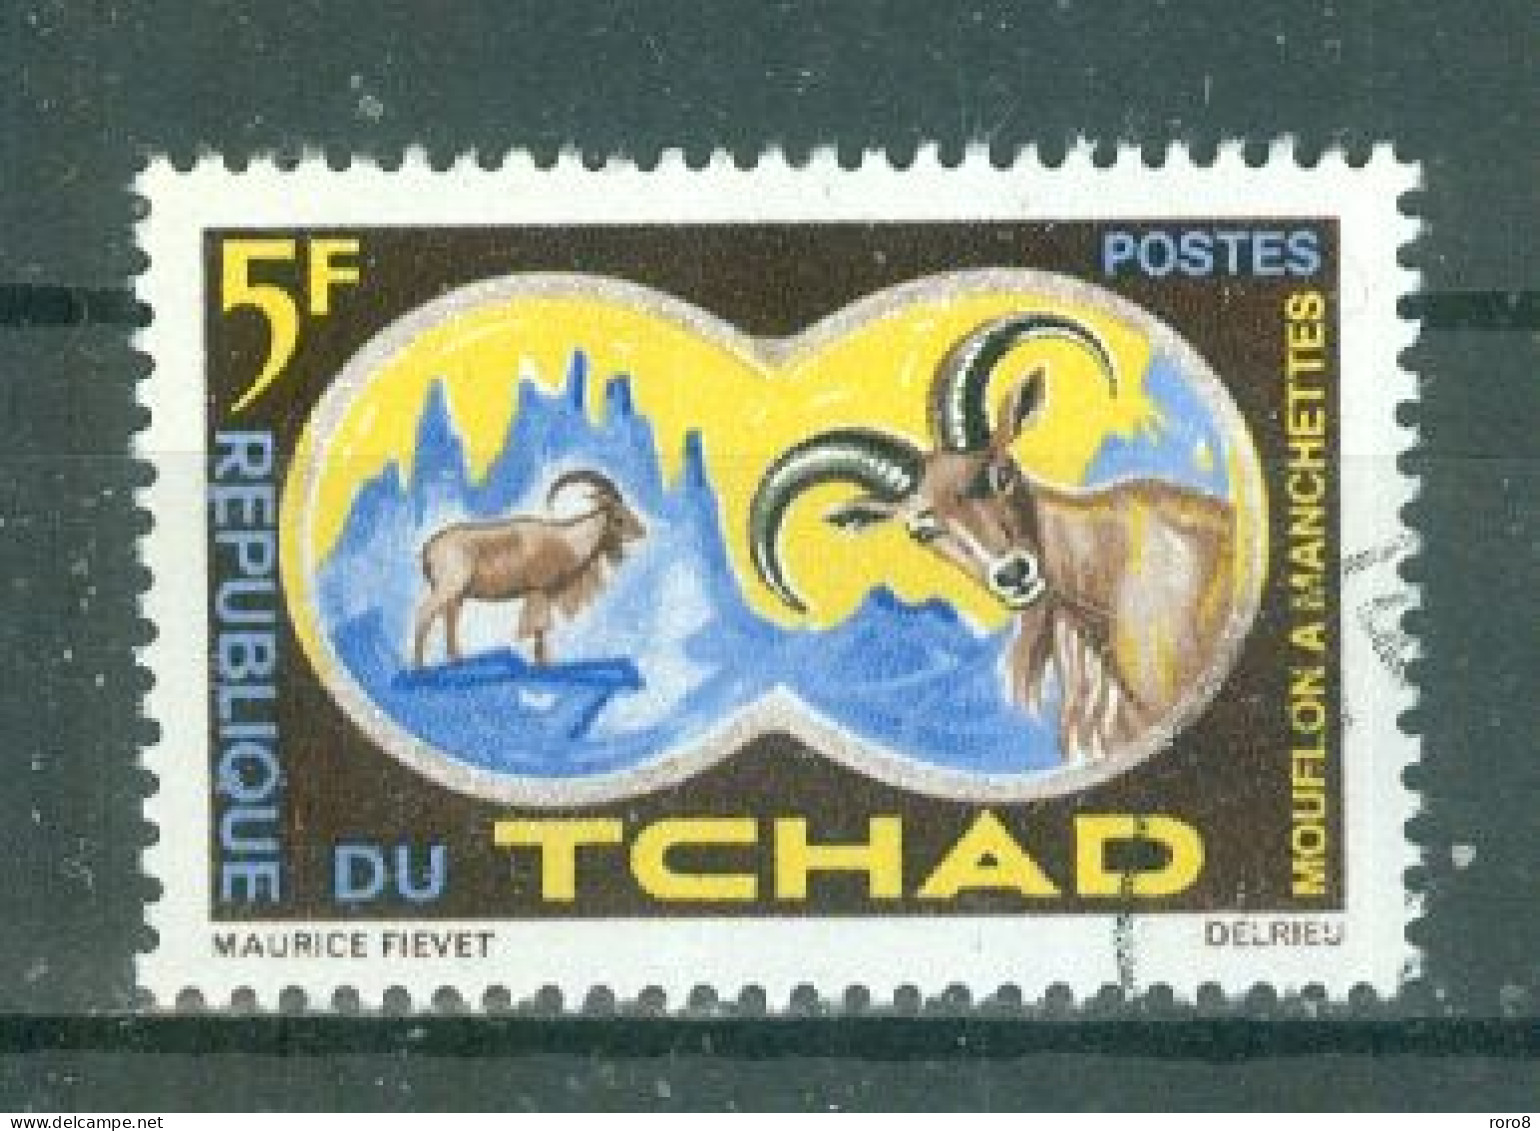 TCHAD - N°104 Oblitéré. -  Protection De La Faune. - Tchad (1960-...)